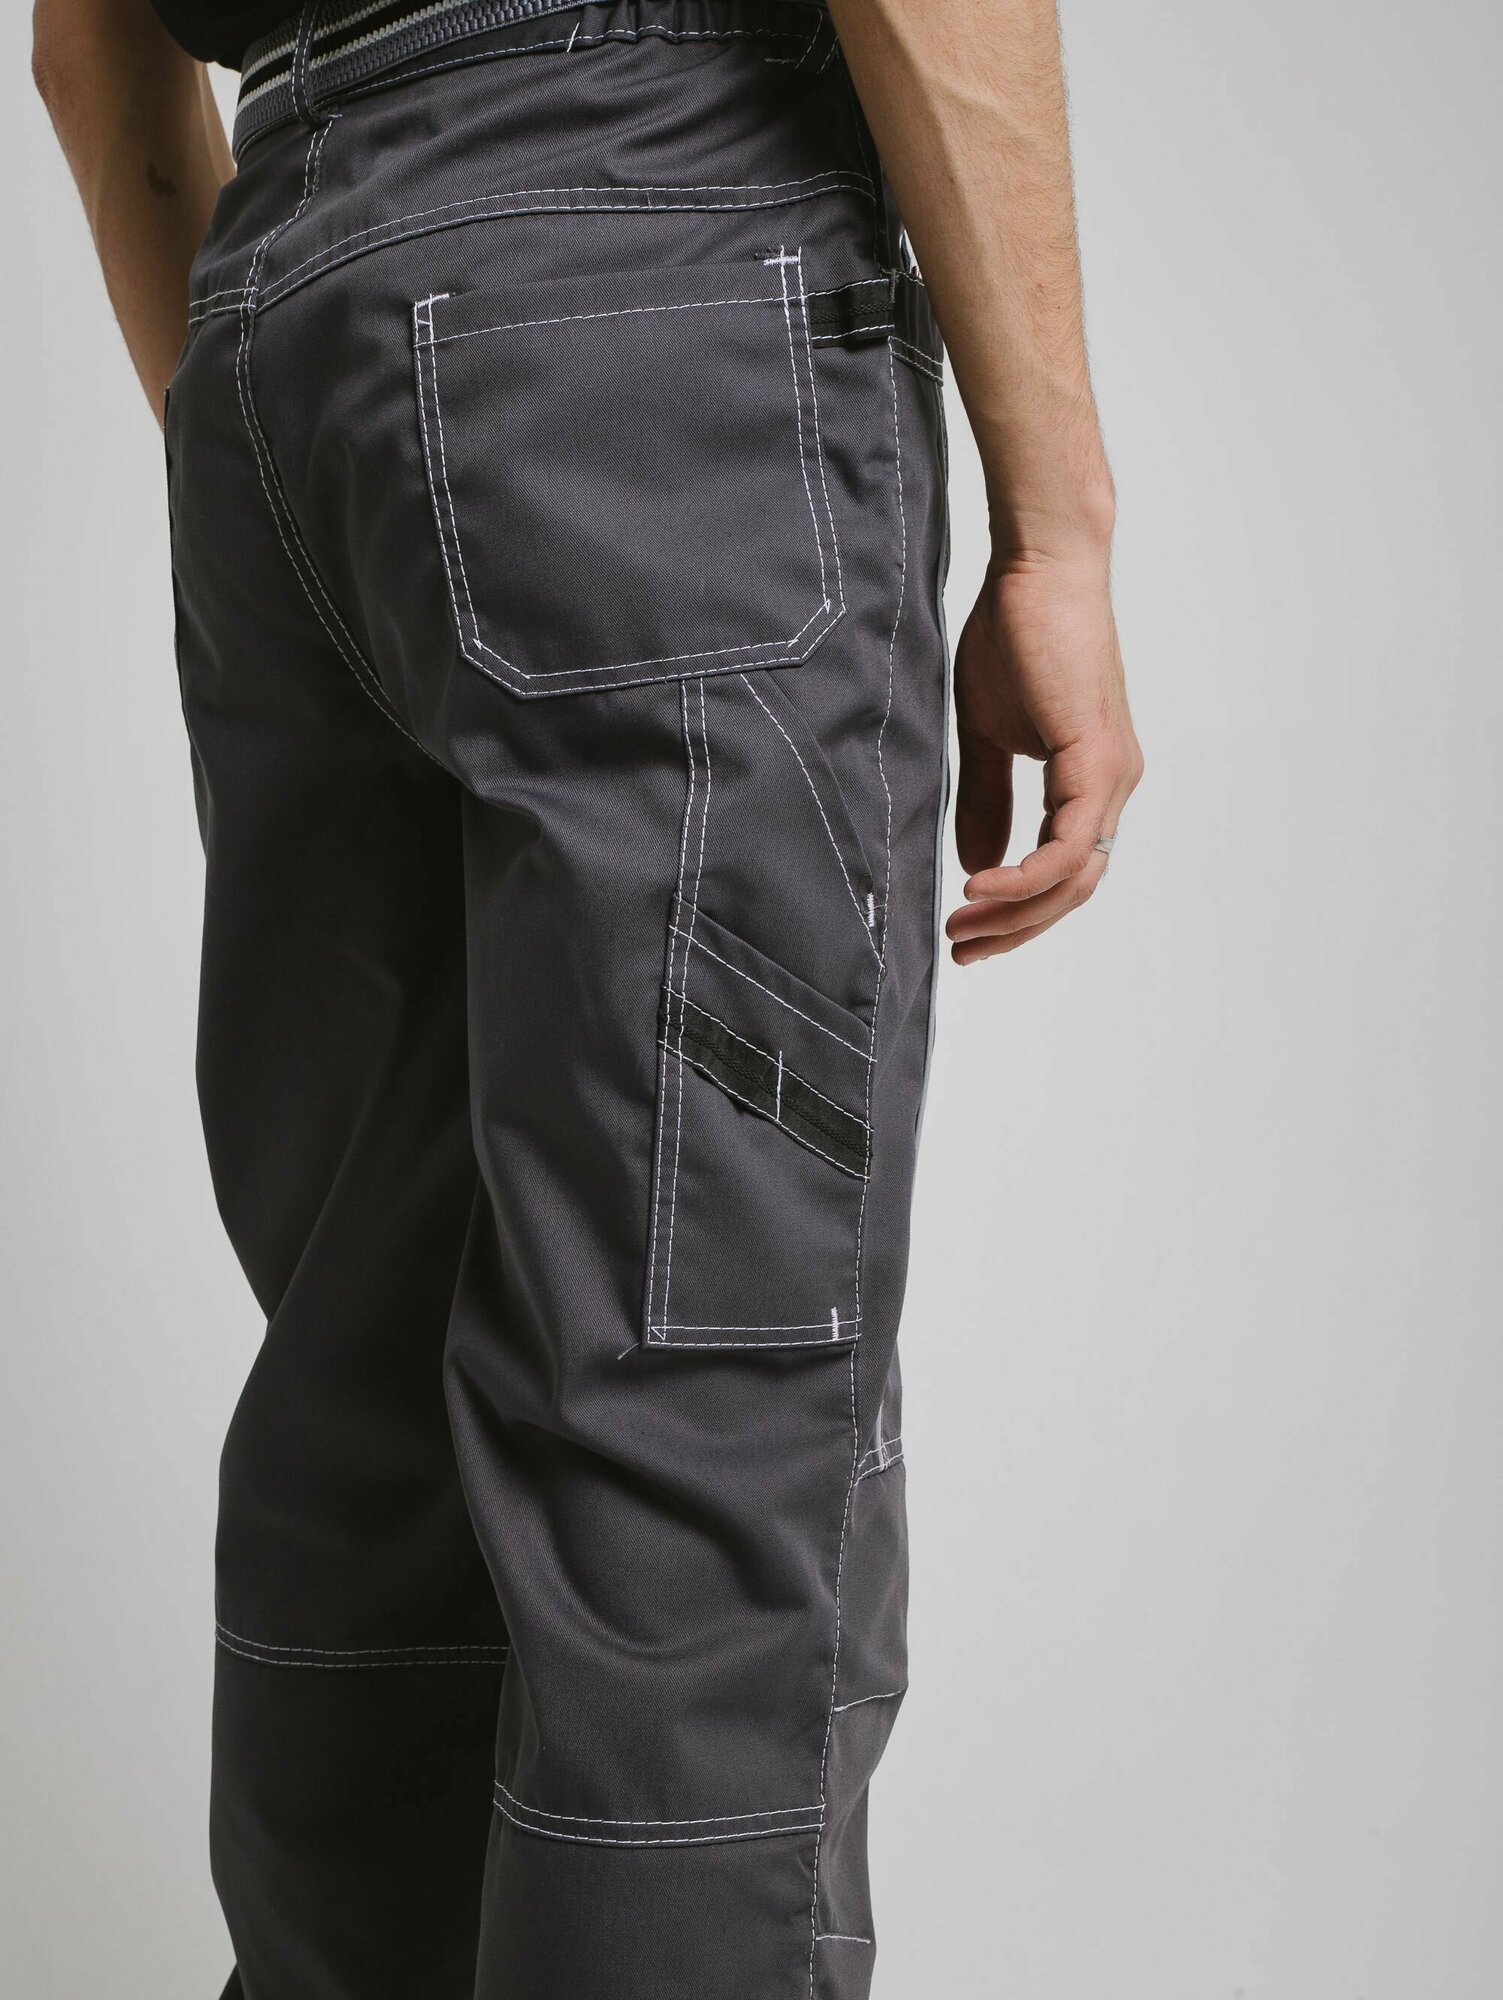 Мужские рабочие брюки, спецодежда весенние летние штаны "Престиж" р. 48-50/182-188